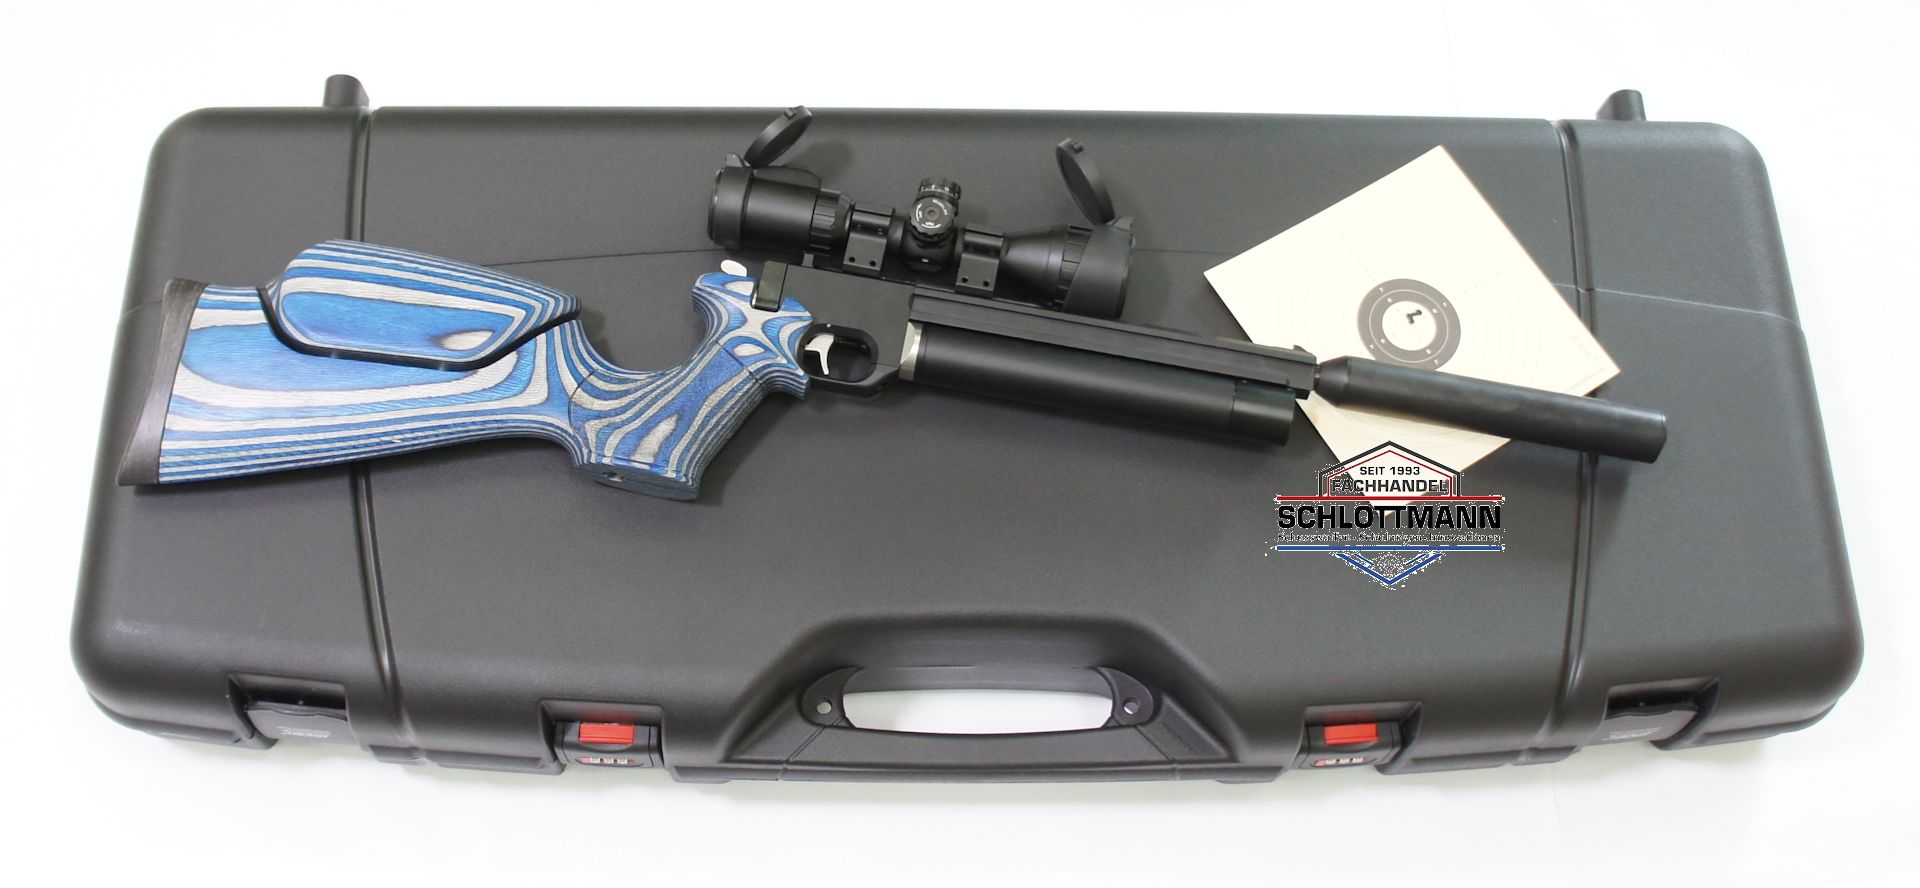 Für die Version einer Luftpistole airmaX PP700S-A als Pistolenkarabiner wäre auch ein passender Koffer im Sortiment.